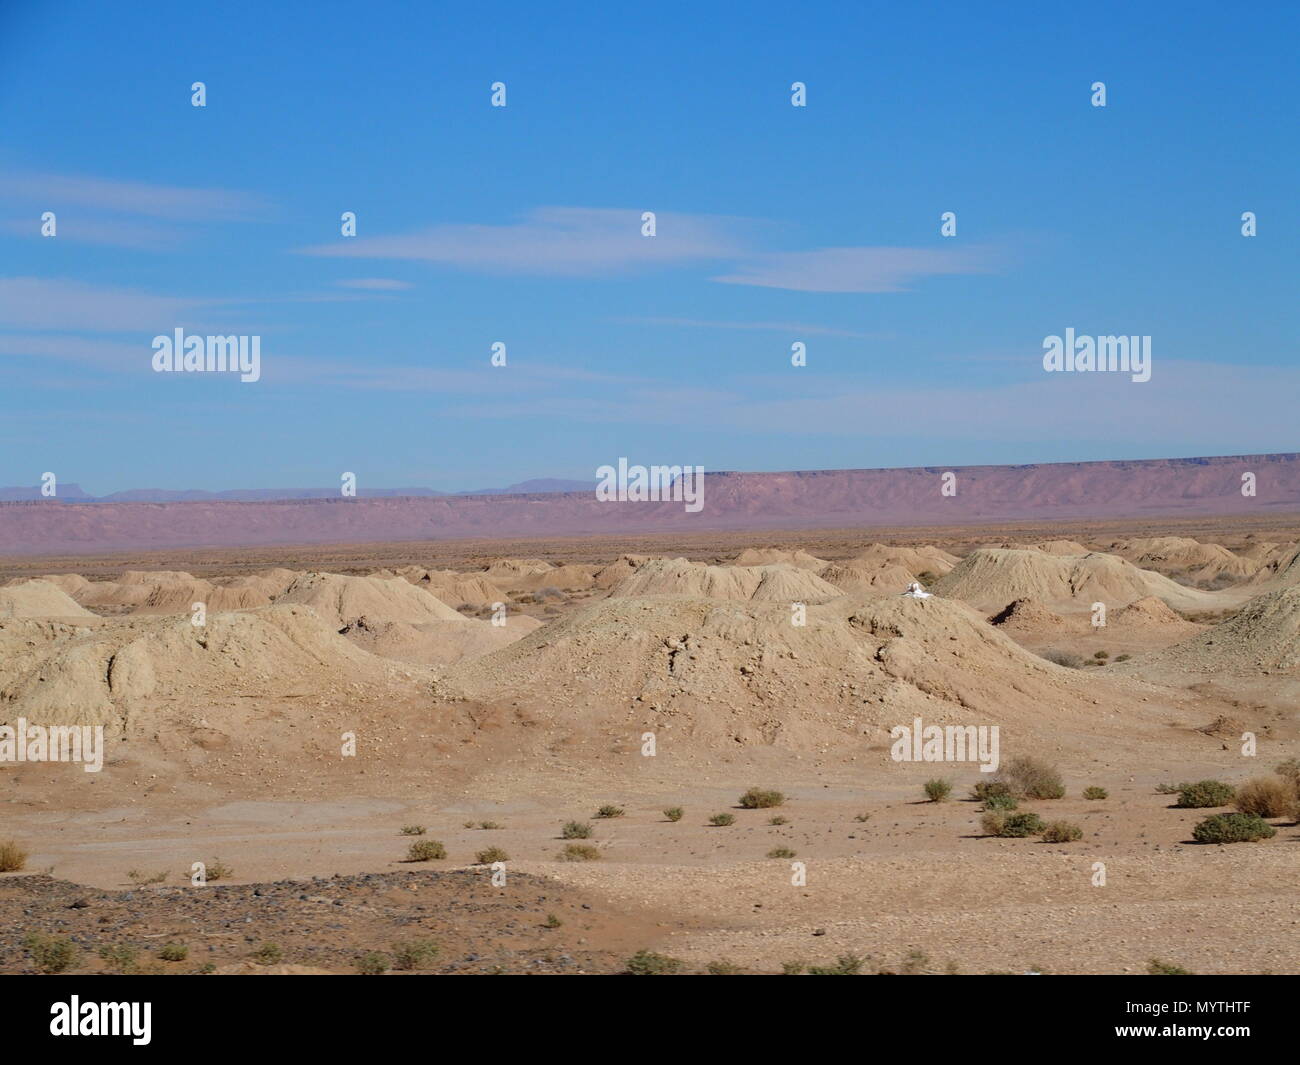 Super Panorama von Ketthara, das Wasser gut an afrikanischen Wüste Sahara Landschaften in der Nähe von Erfoud in Marokko mit klaren blauen Himmel in 2017 kalten sonnigen w Stockfoto